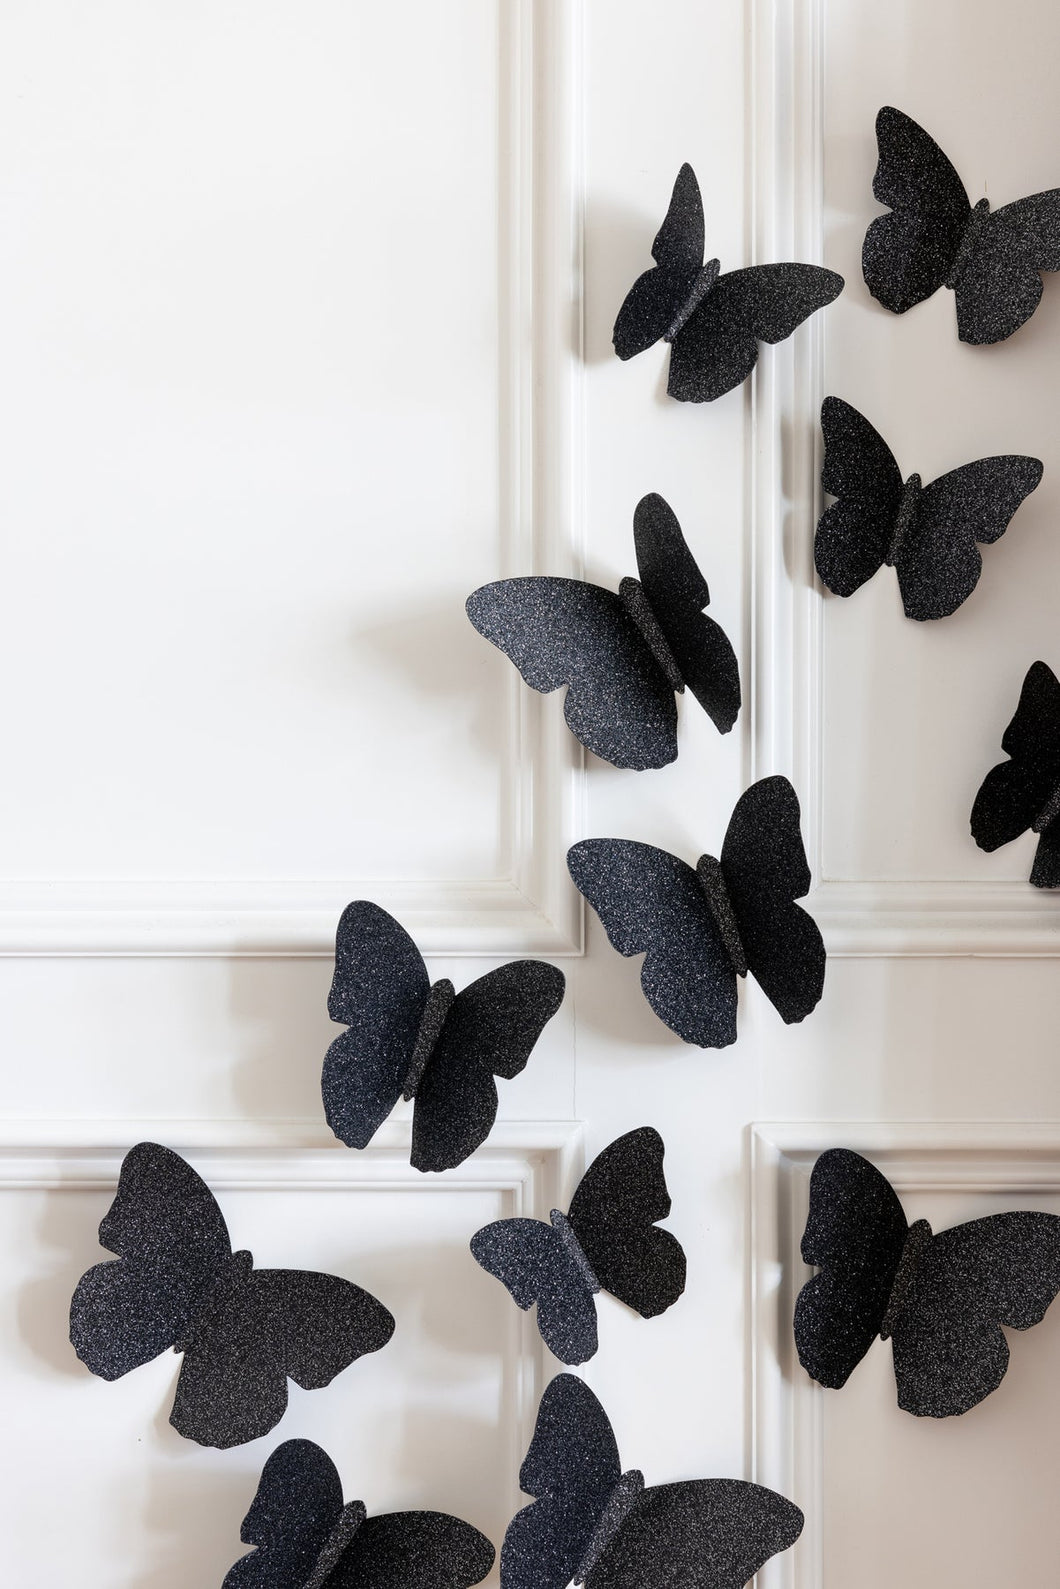 Mystical Bag of Butterflies Wall Decor